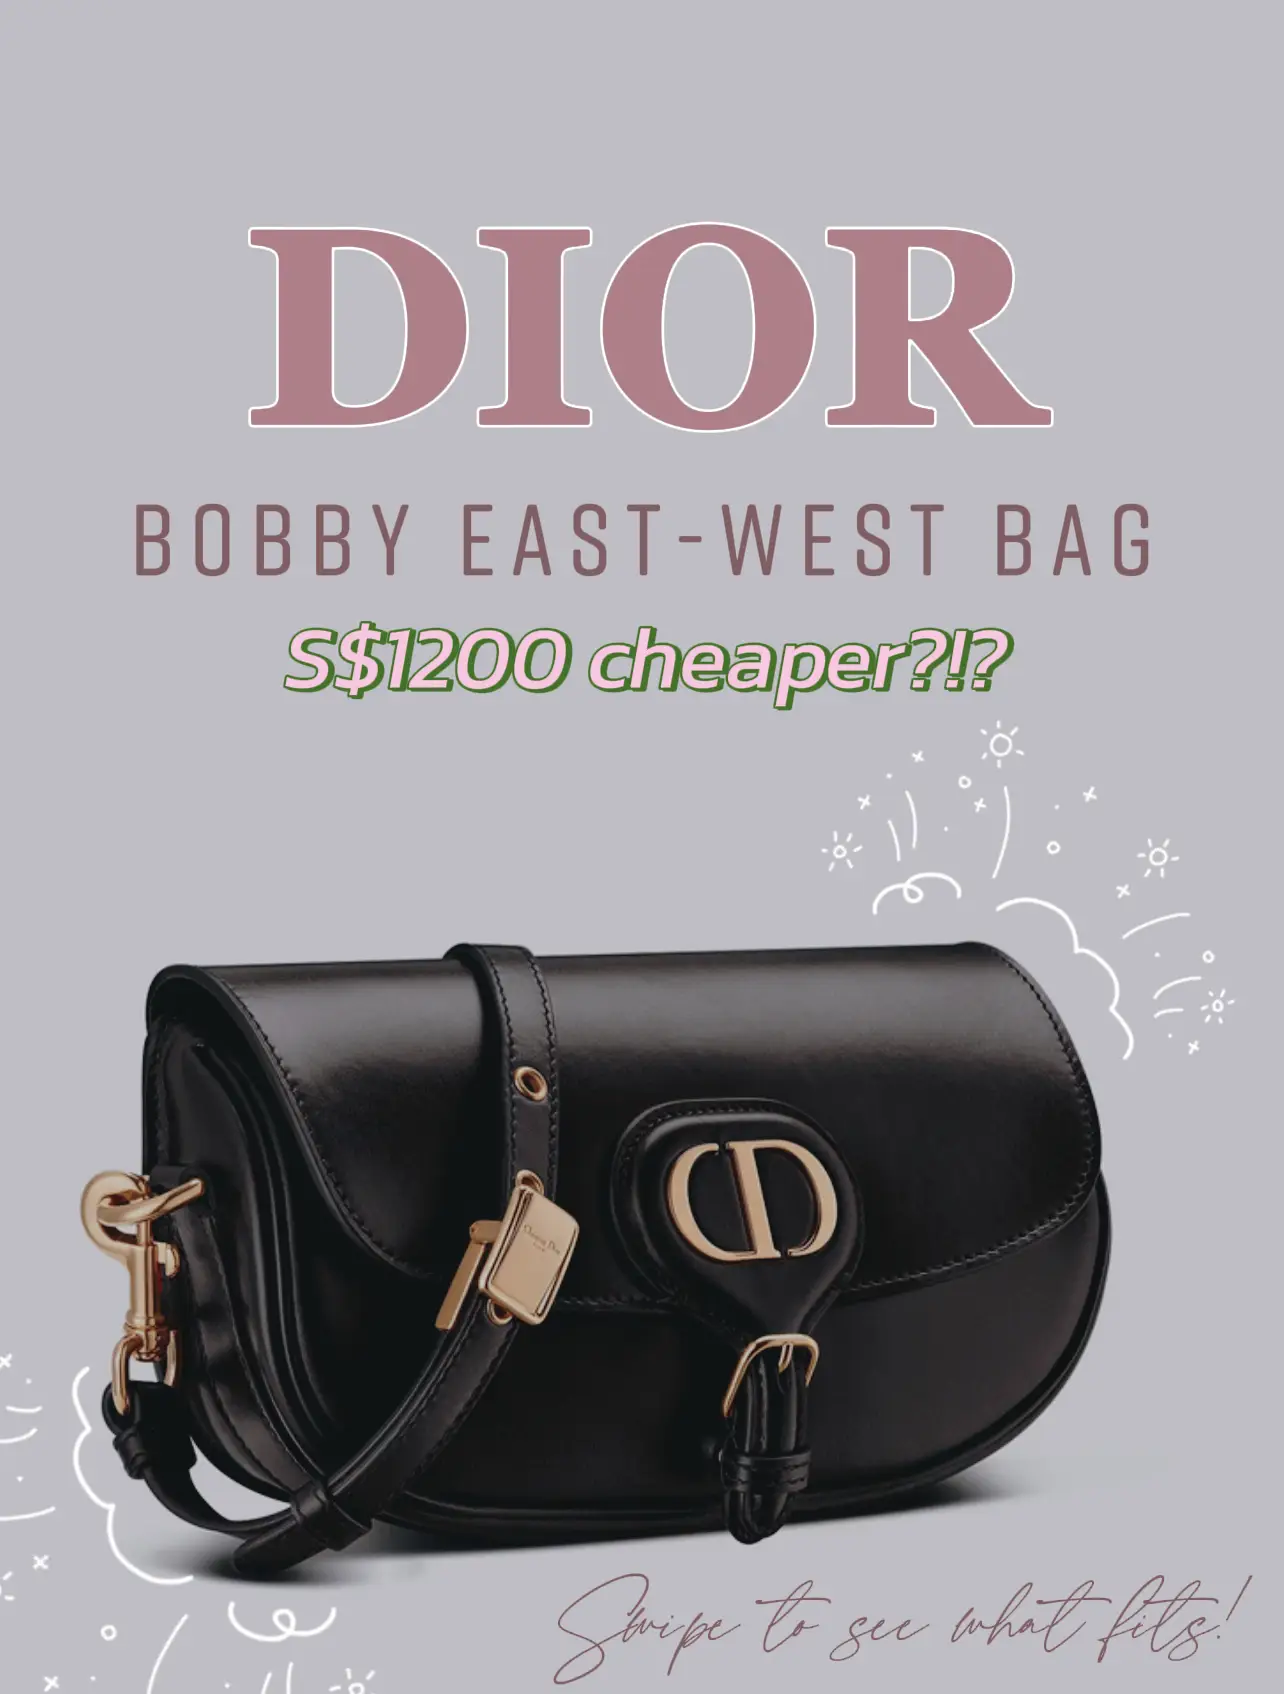 Dior East West Bobby Bag vs. Medium Dior Bobby Bag - Pricing